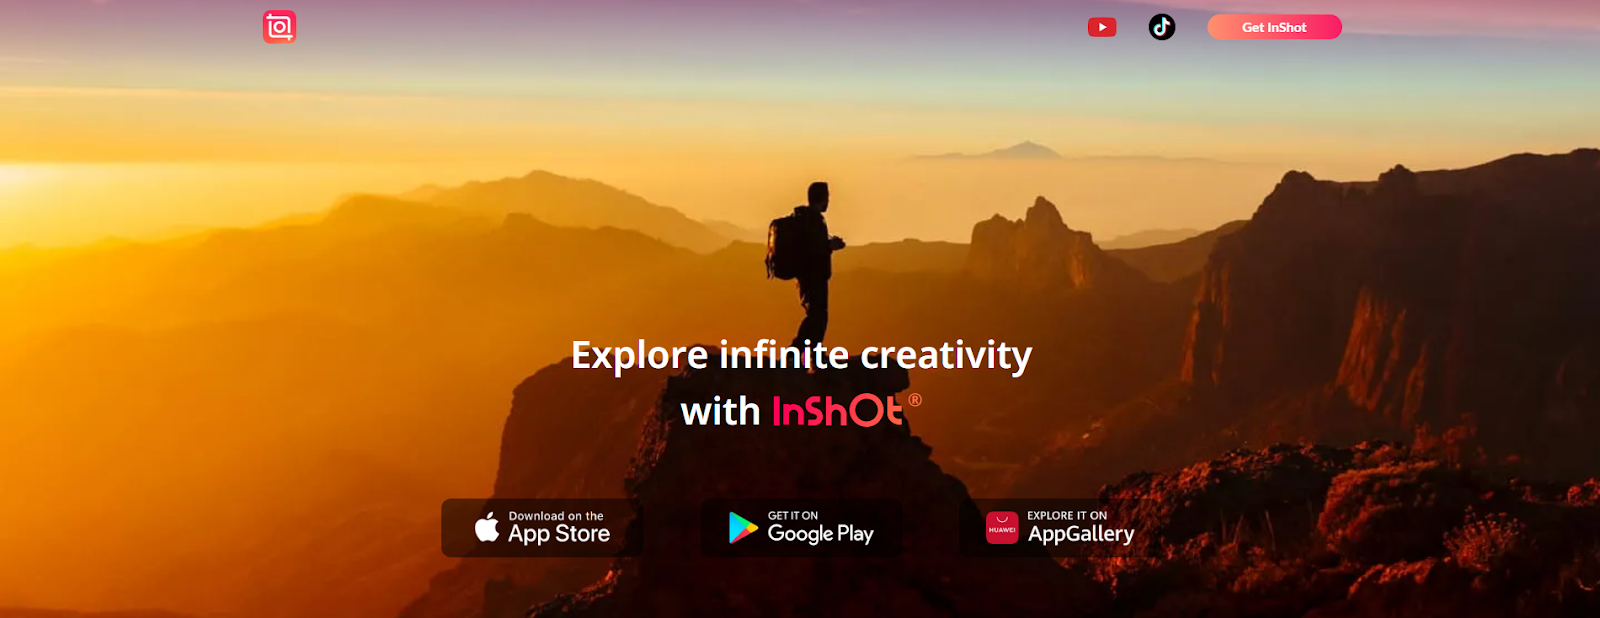 Сайт приложения для создания рекламных роликов InShot